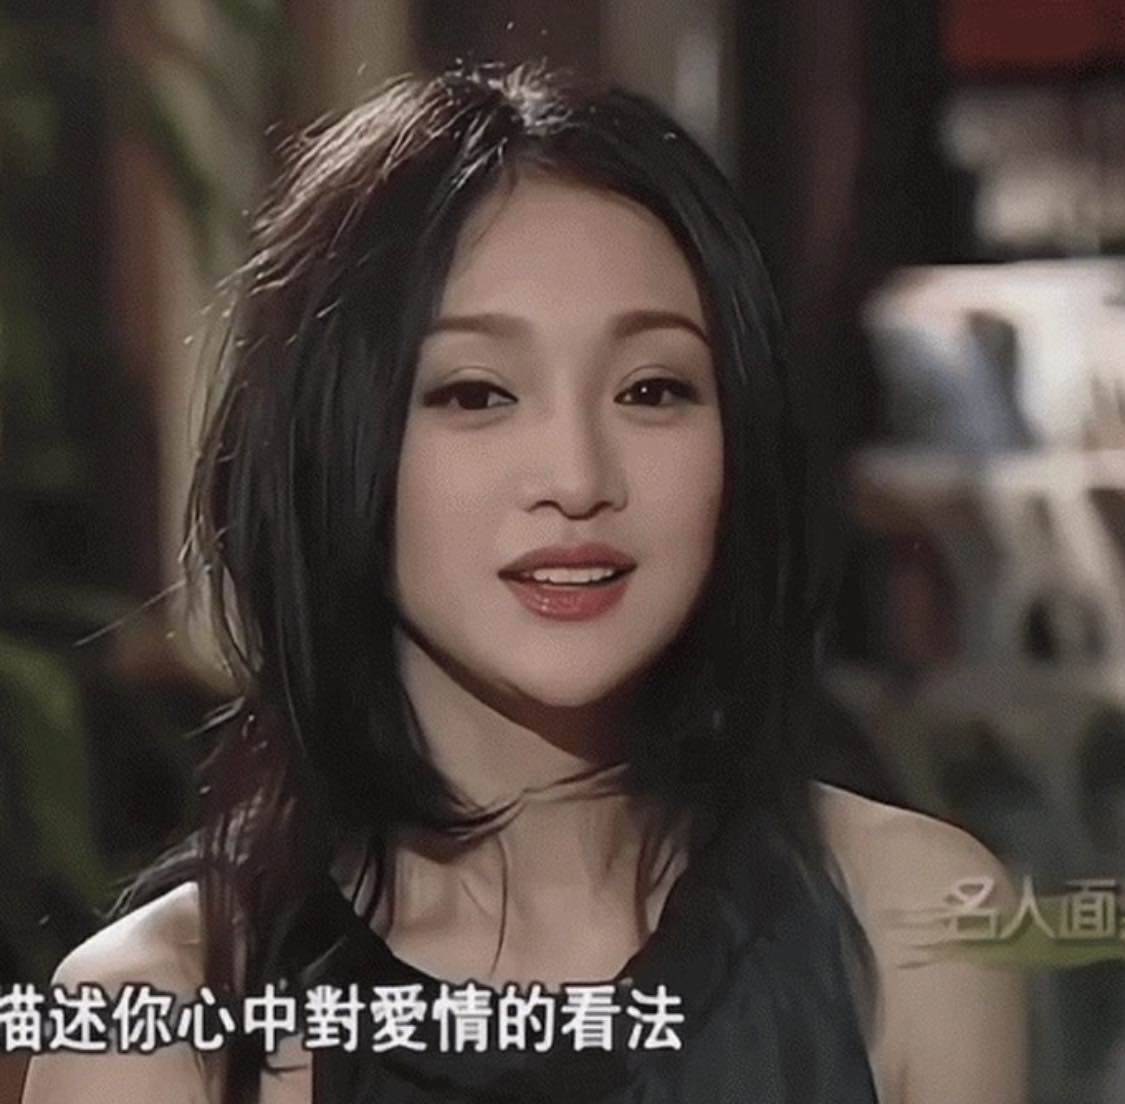 Nhan sắc tuổi 35 của Châu Tấn vẫn đẹp trong veo như thiếu nữ bất ngờ lên top 1 tìm kiếm - 1